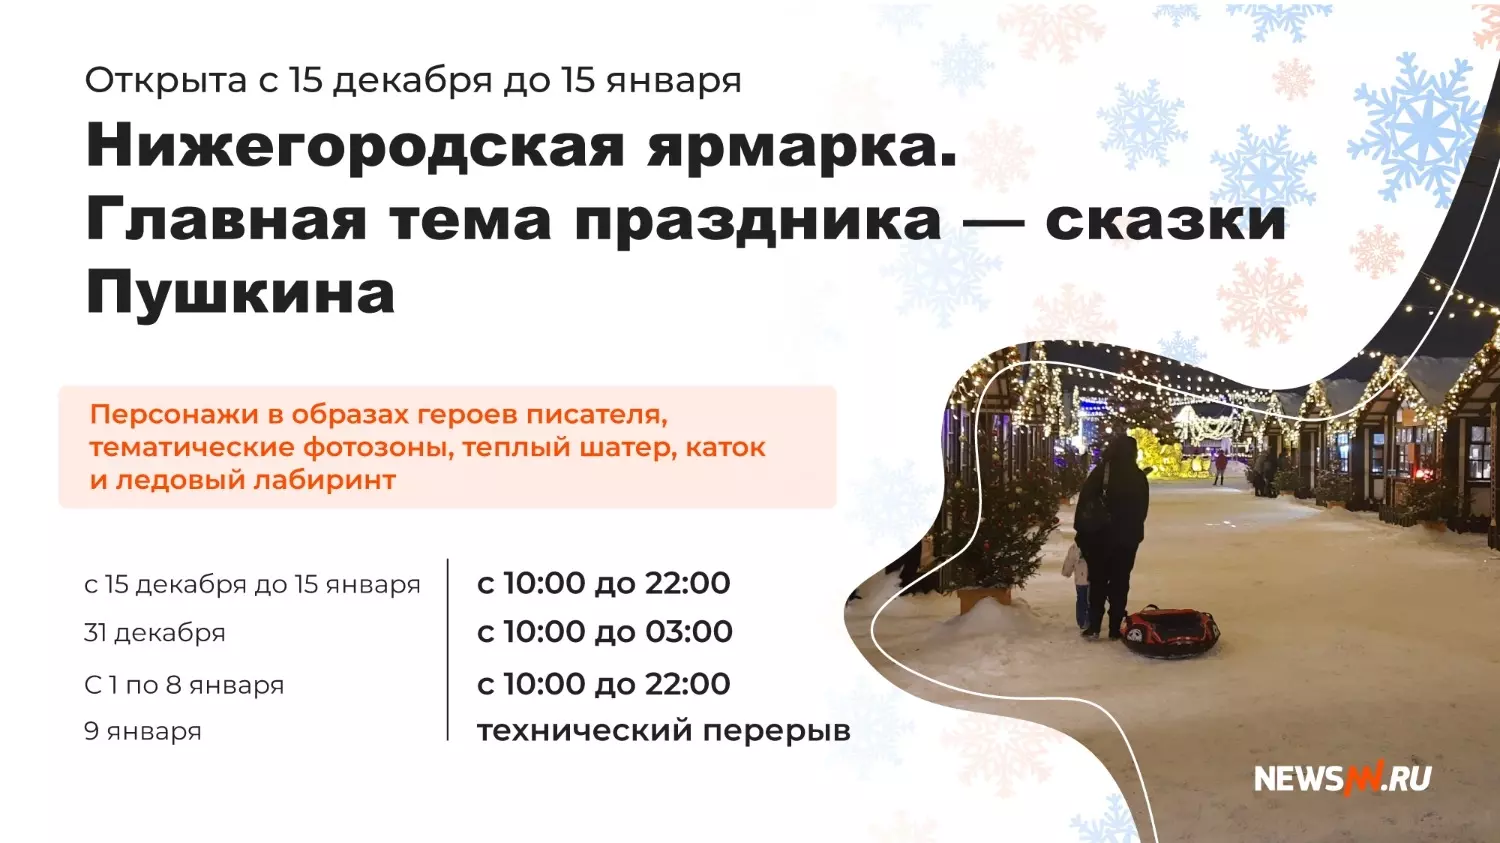 Новогодняя программа на Нижегородской ярмарке